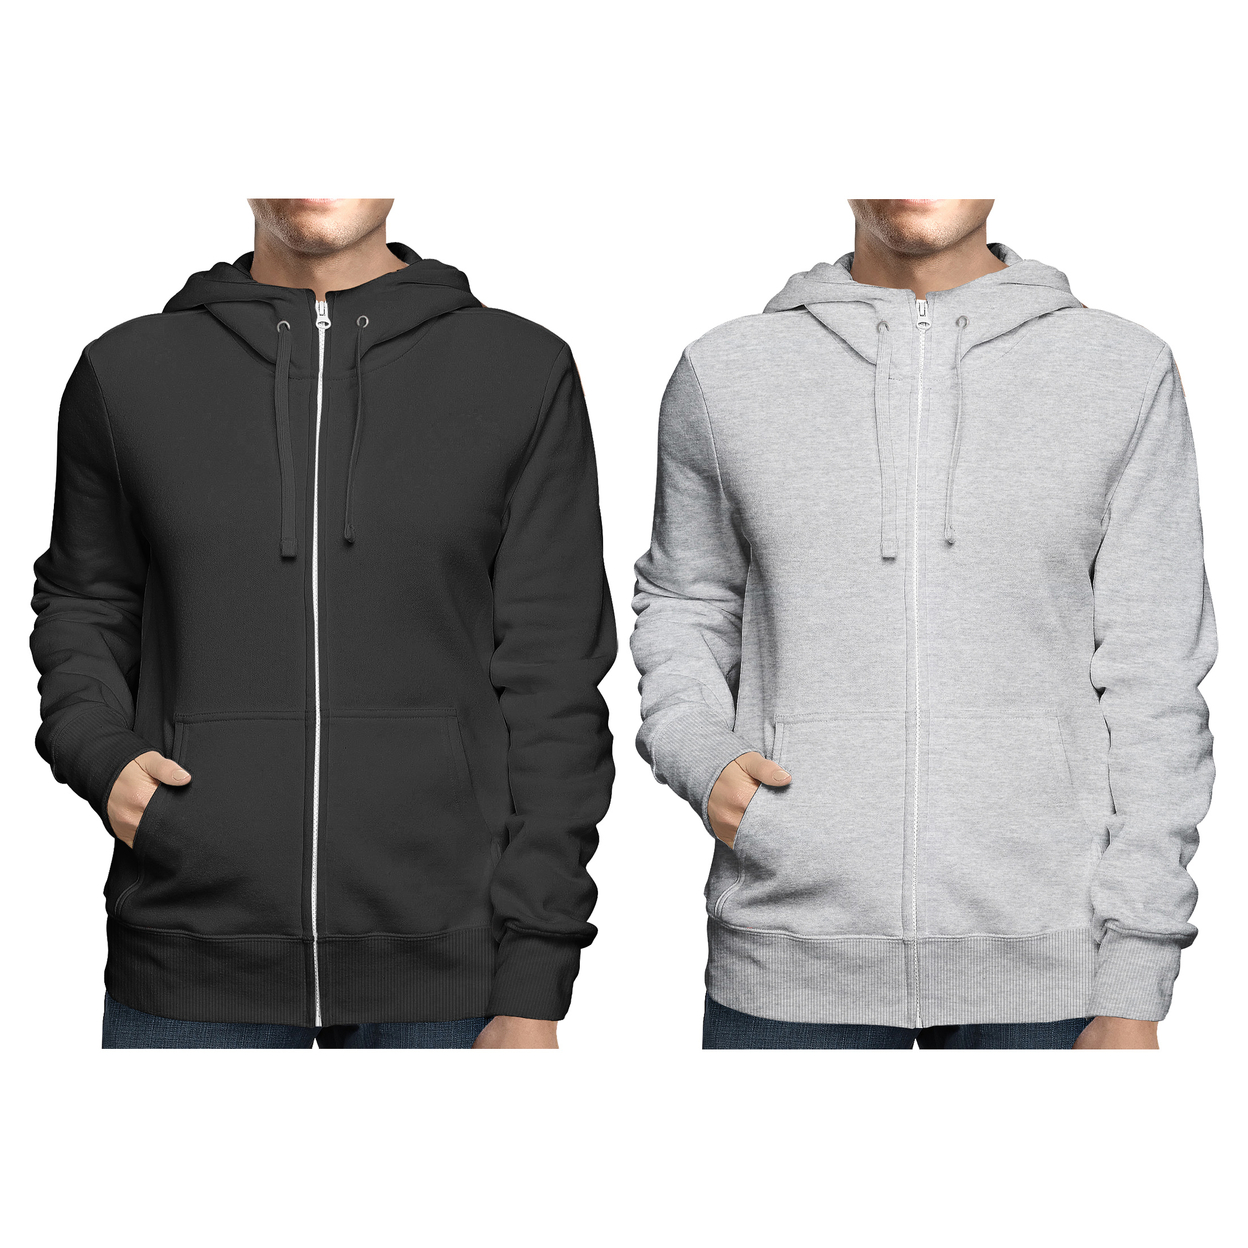 2-Pack: Men's Winter Warm Soft Full Zip-Up Fleece Lined Hoodie Sweatshirt - Black & Navy, Xx-large